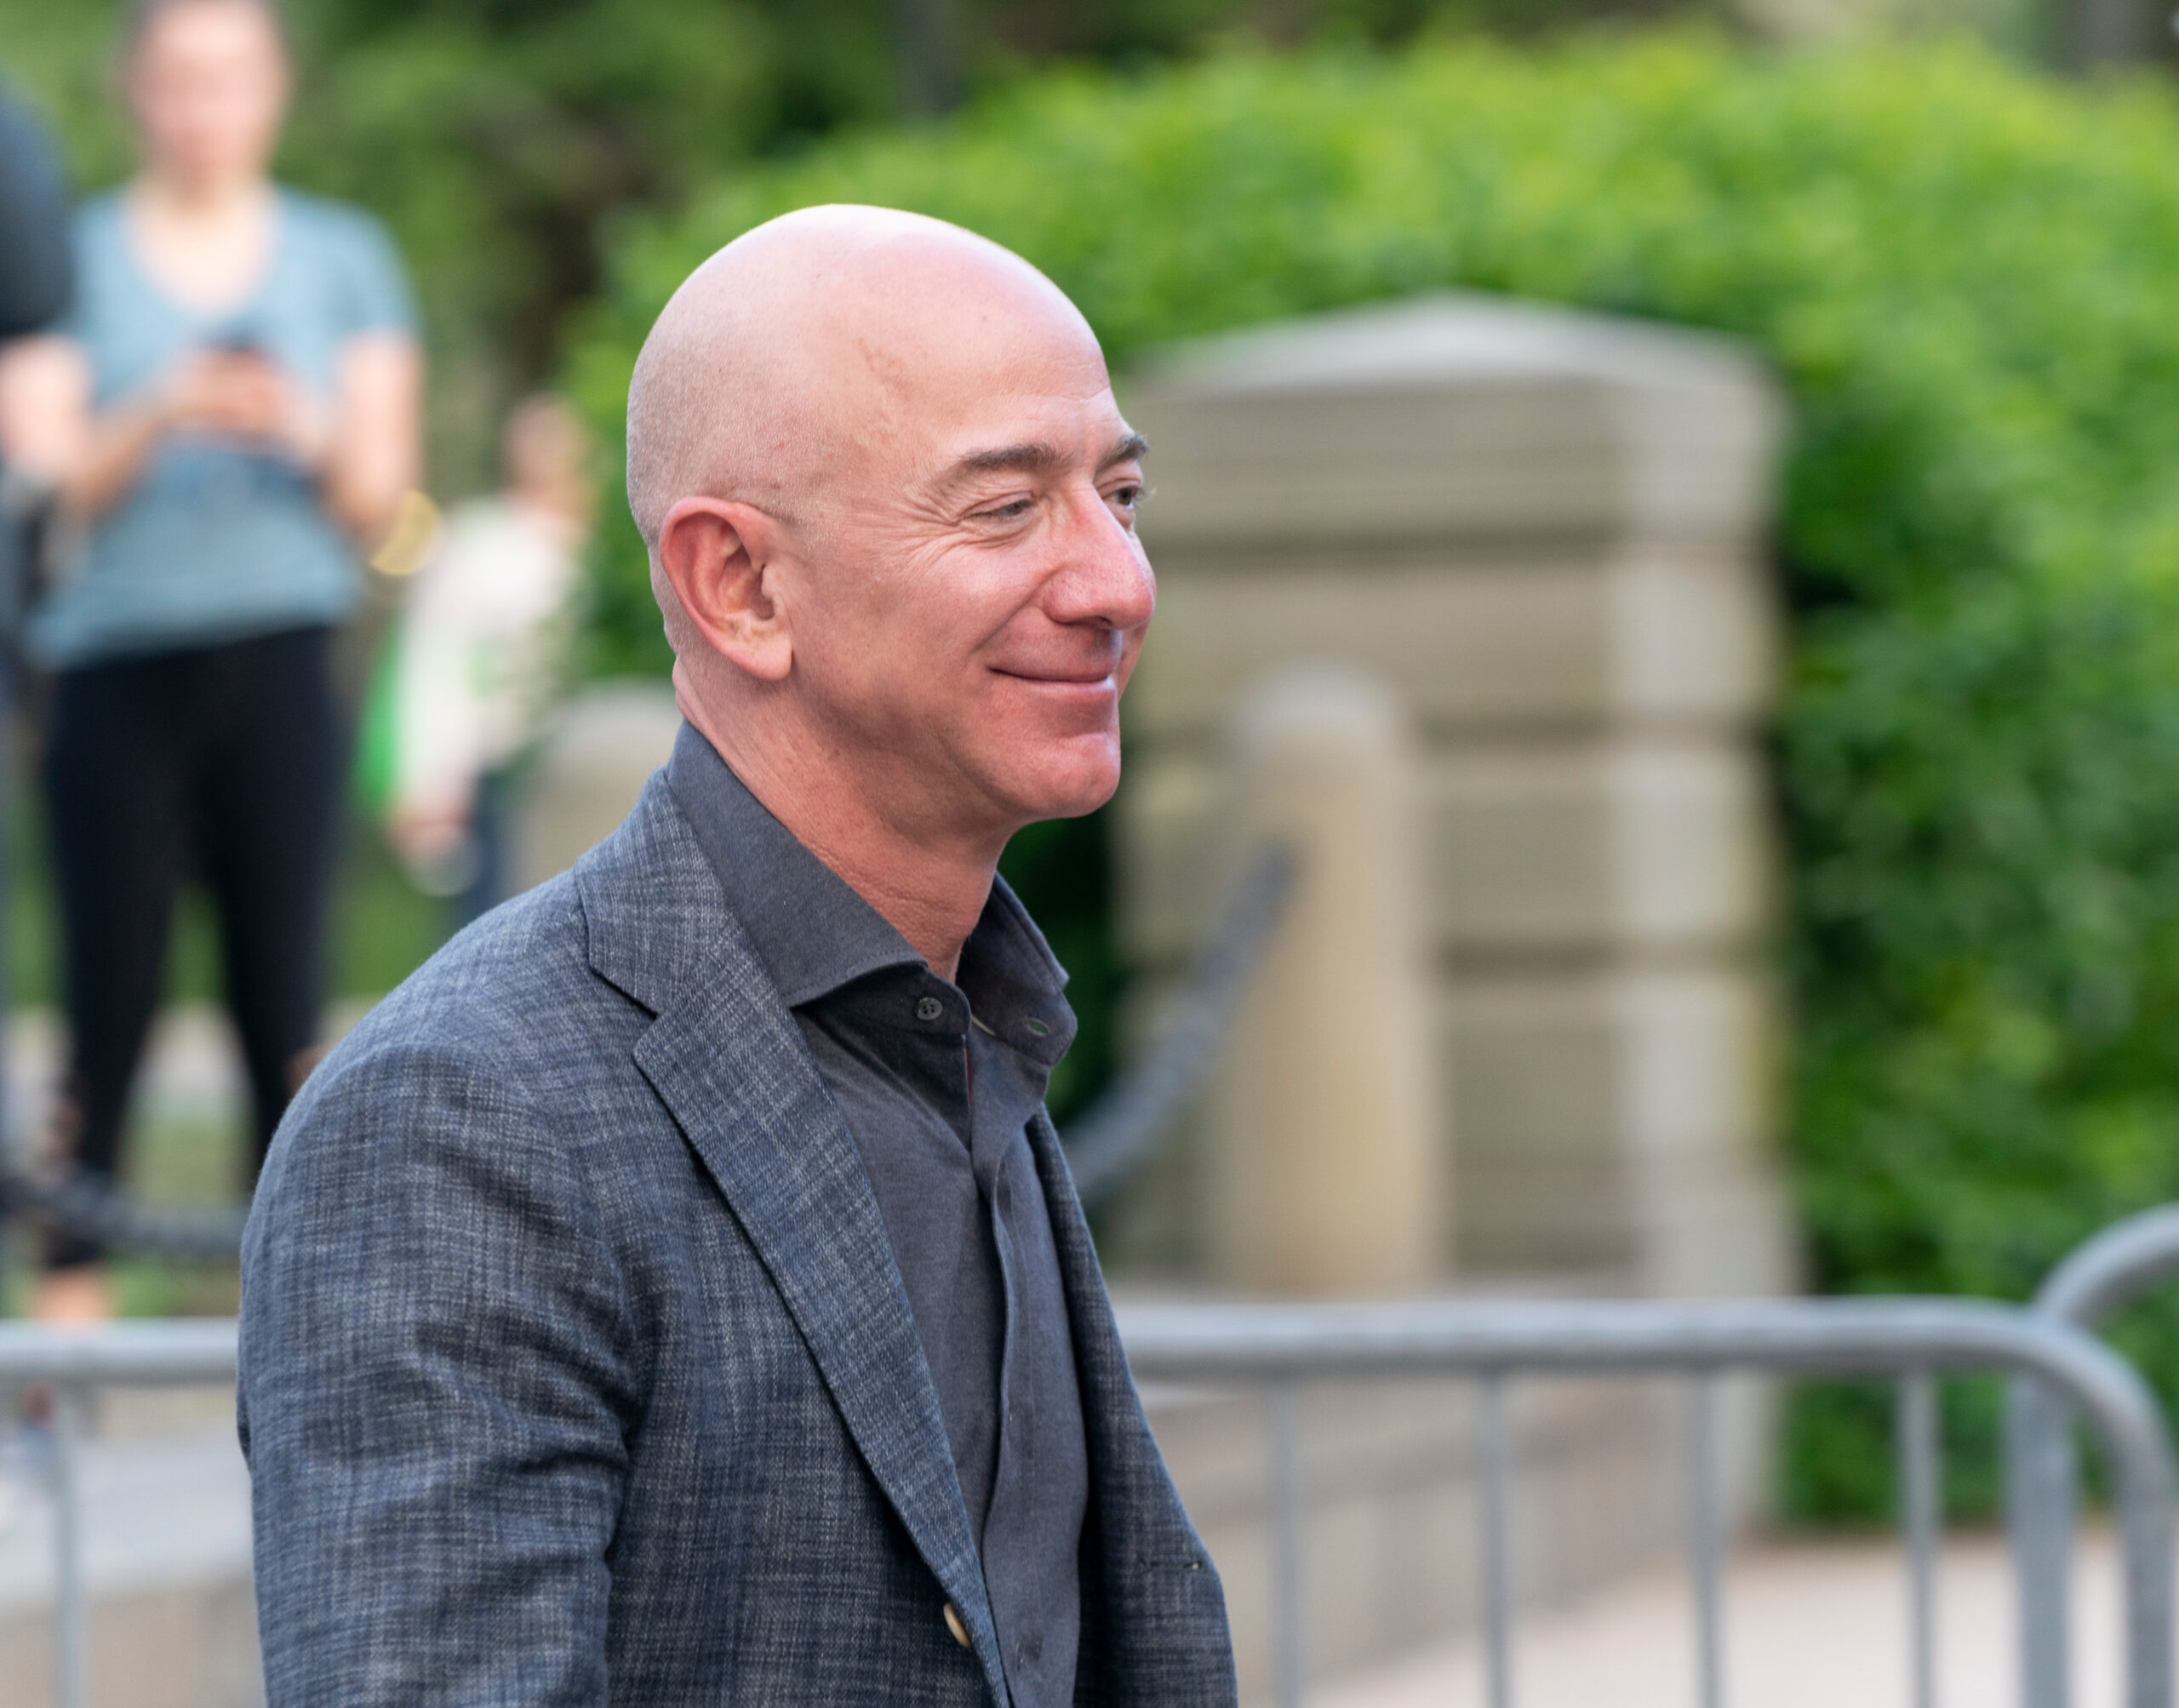 Jeff Bezos frente a uma crise econômica: o que o bilionário faria? Veja!